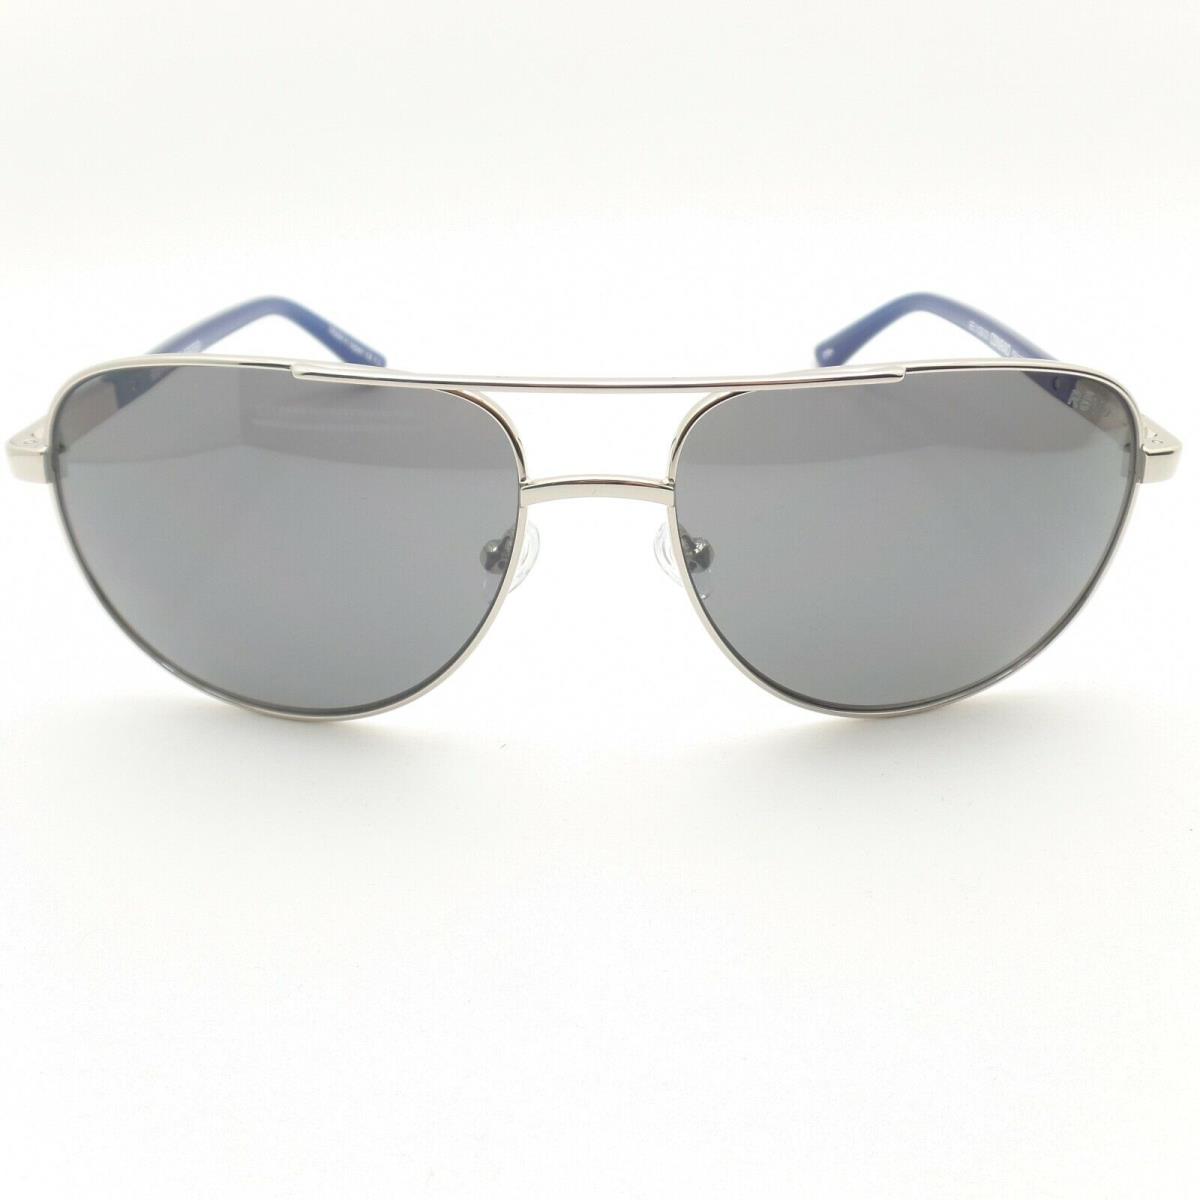 Revo sunglasses  - Chrome Blue Frame, Graphite Lens